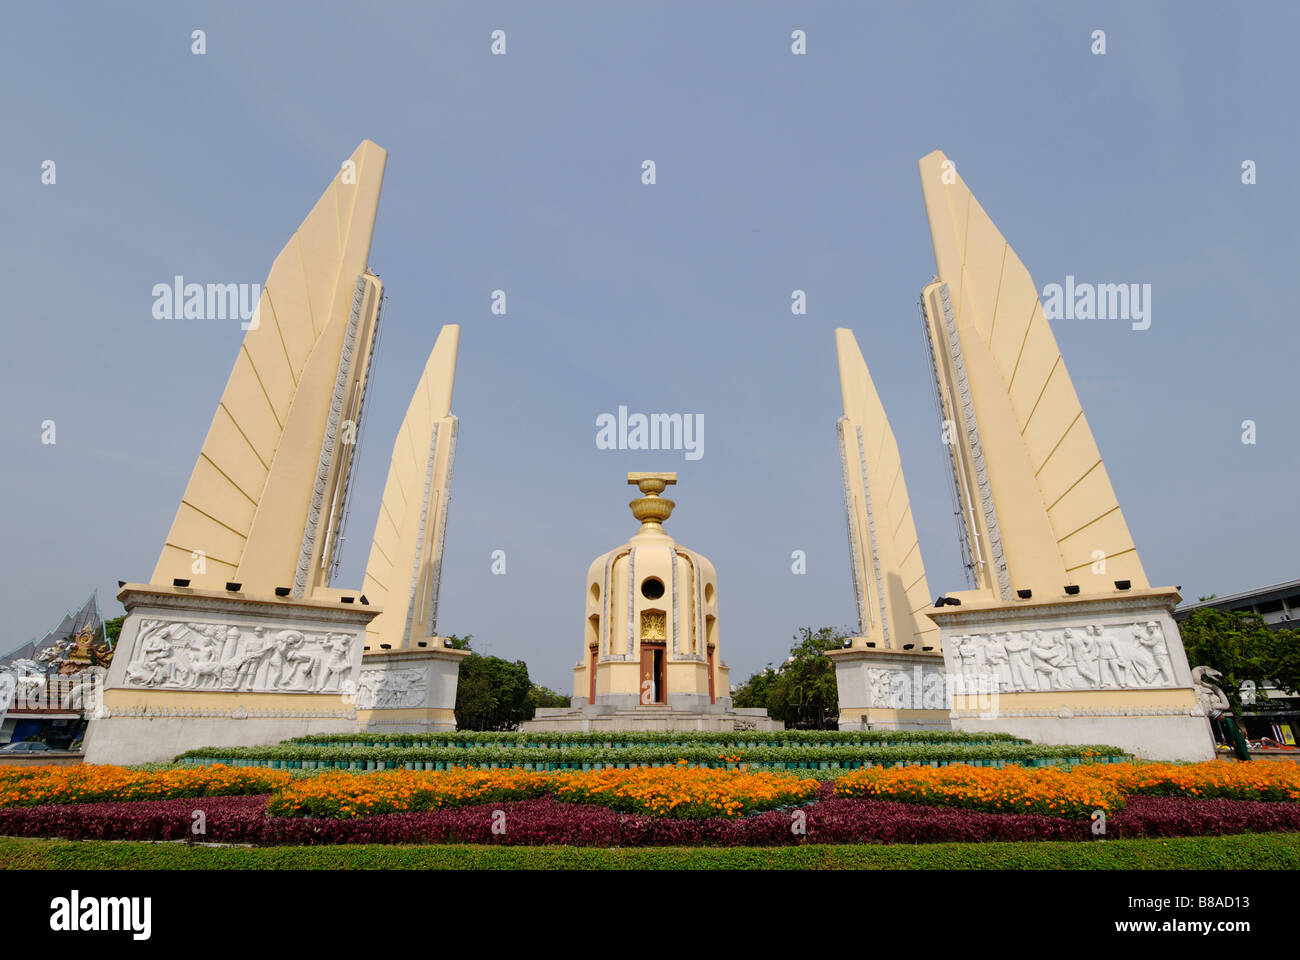 Le Monument de la démocratie construite après l'armée a renversé la monarchie absolue en 1932 - Bangkok, Thaïlande Banque D'Images